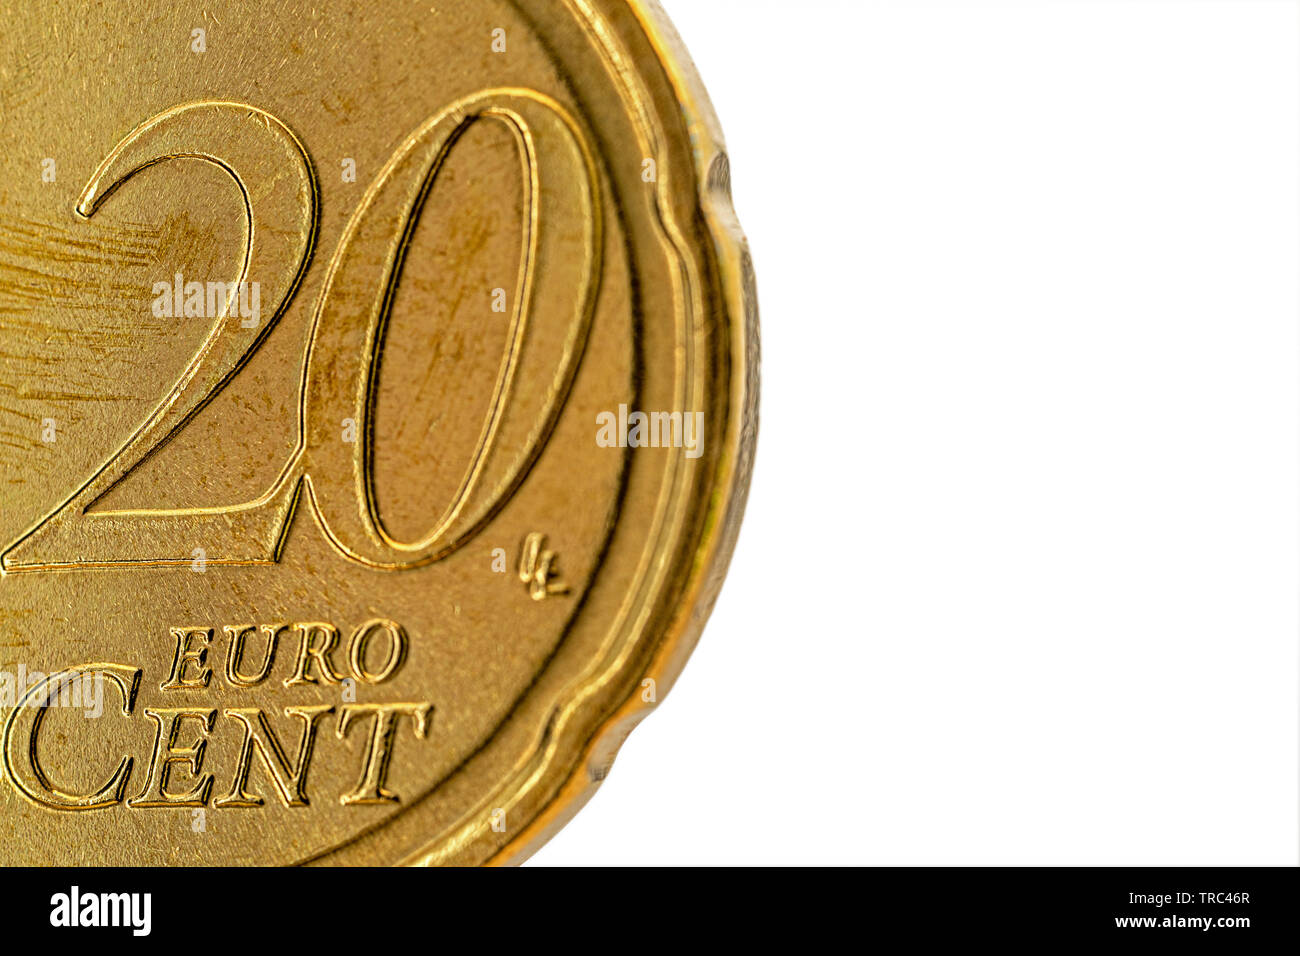 Монета процентная. Вода смонеткой евро картинка.